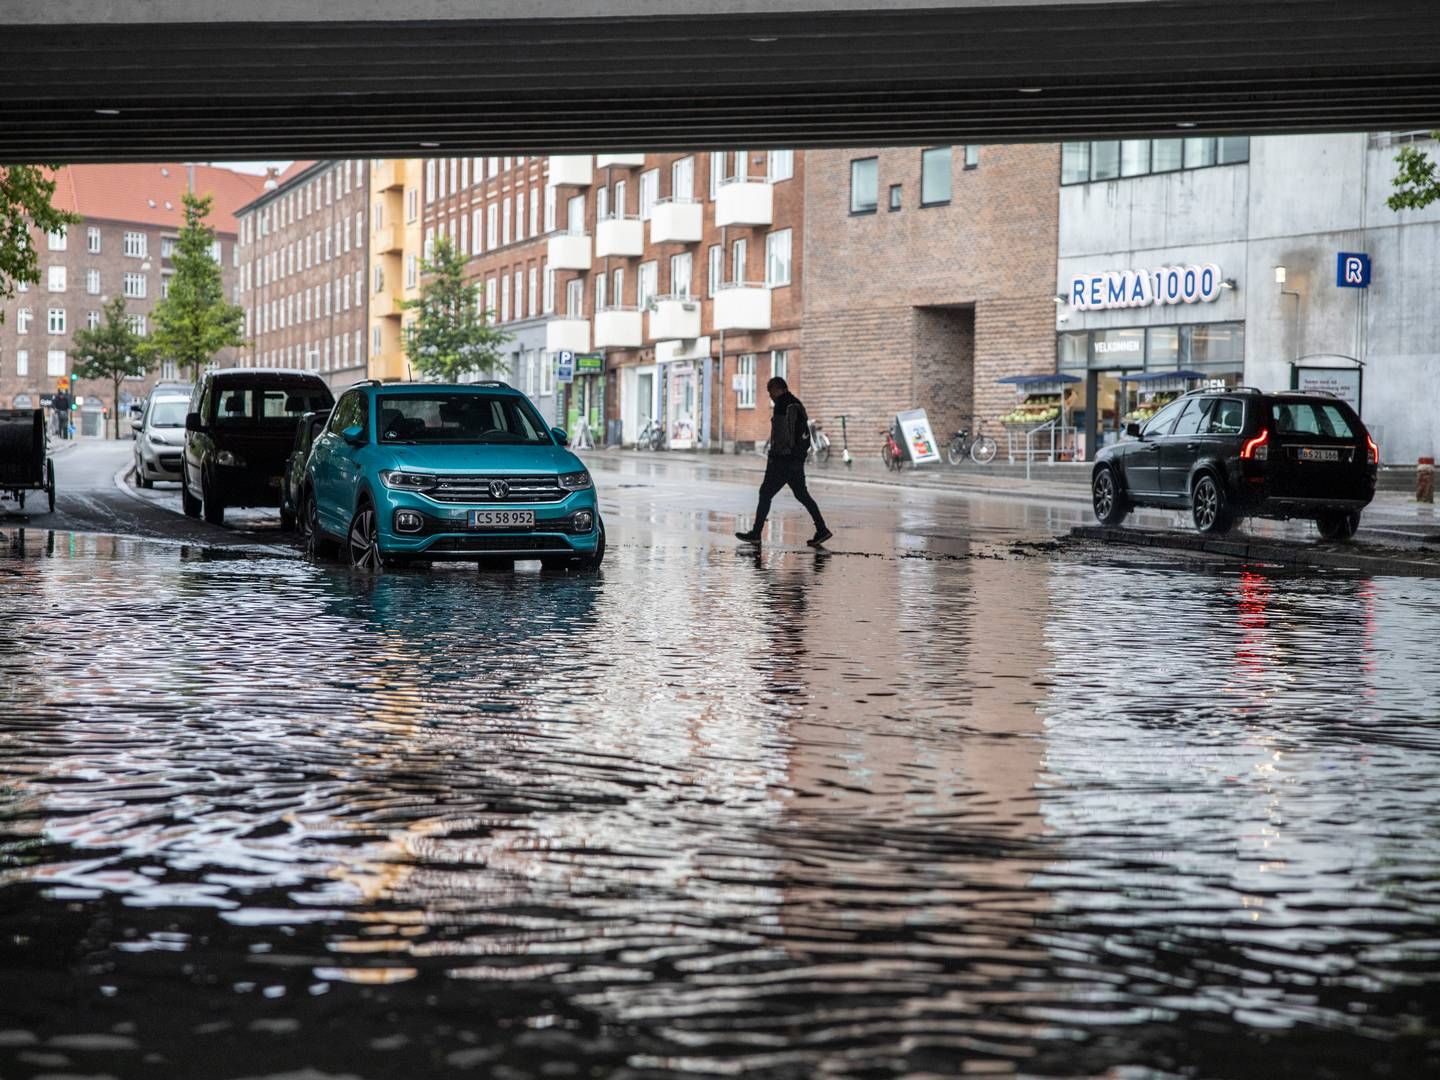 De kommunale beredskaber mangler både materiel, uddannelse og arbejdskraft til at beskytte danskerne mod fremtidige oversvømmelser. | Foto: Jens Hartmann